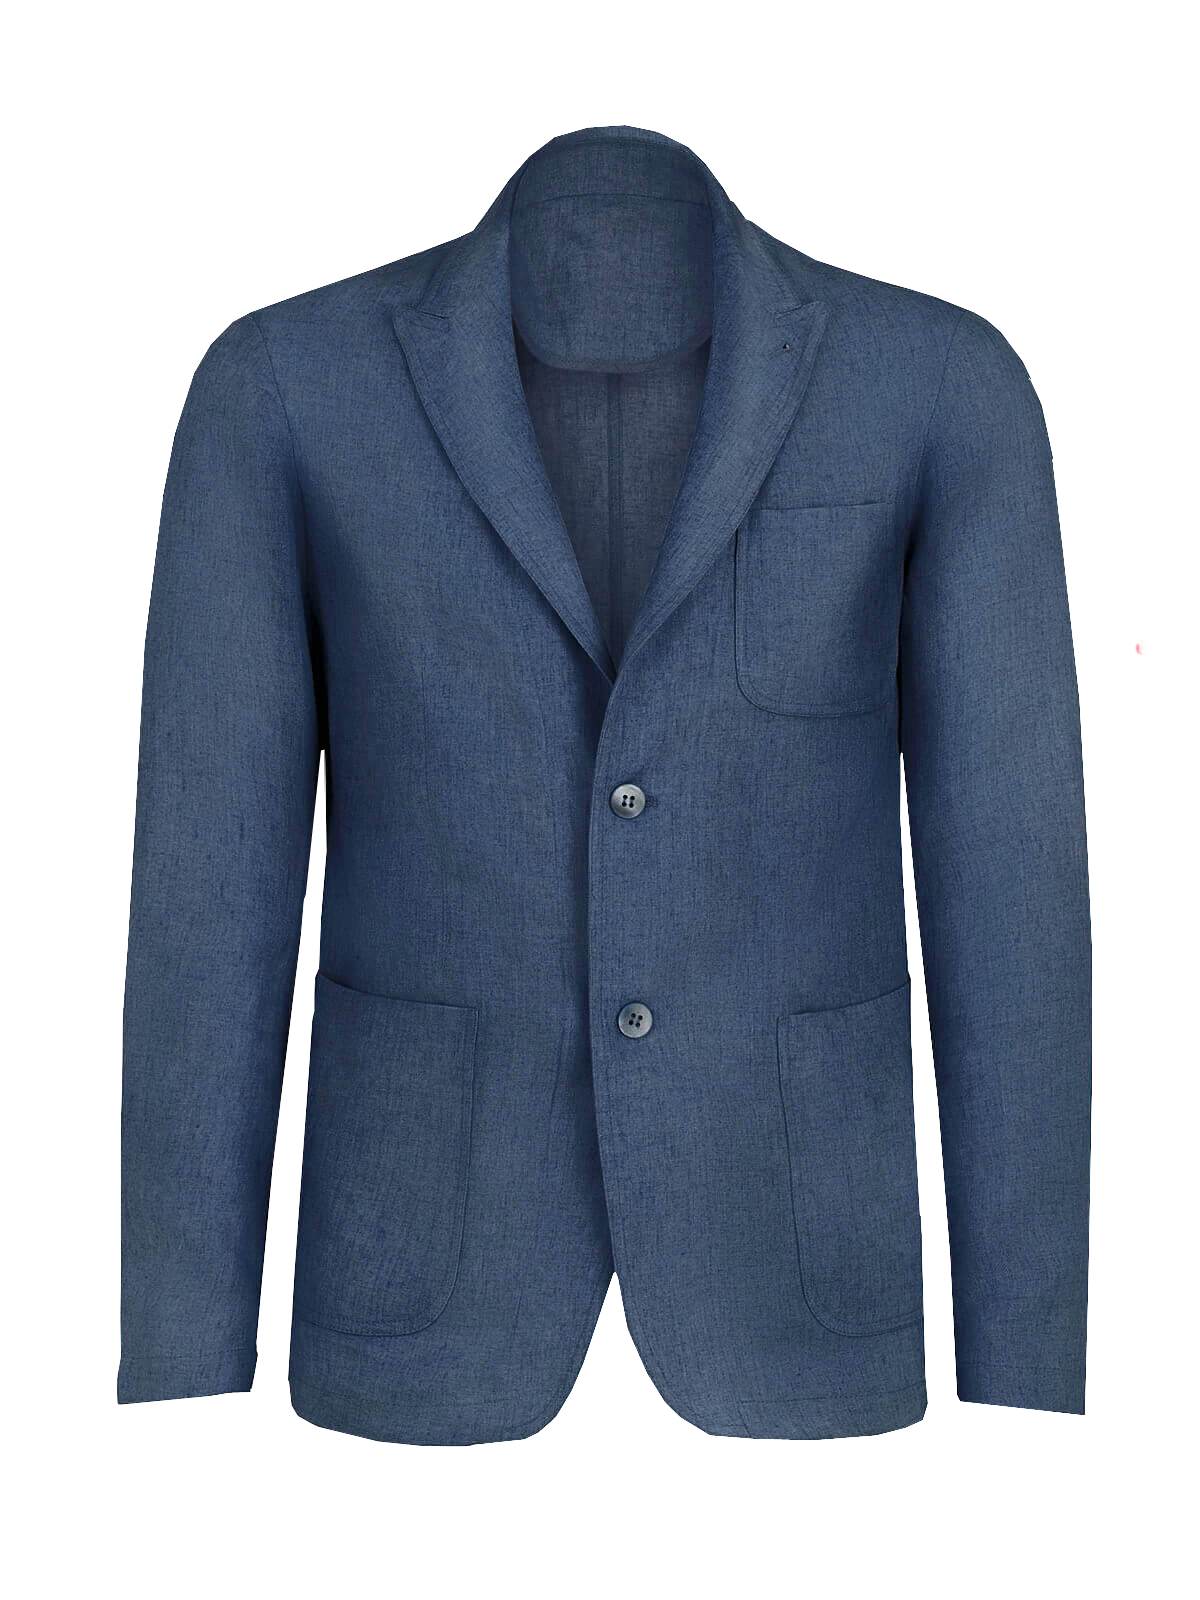 Giacca St. Tropez 100% Capri blue linen jacket for man front 